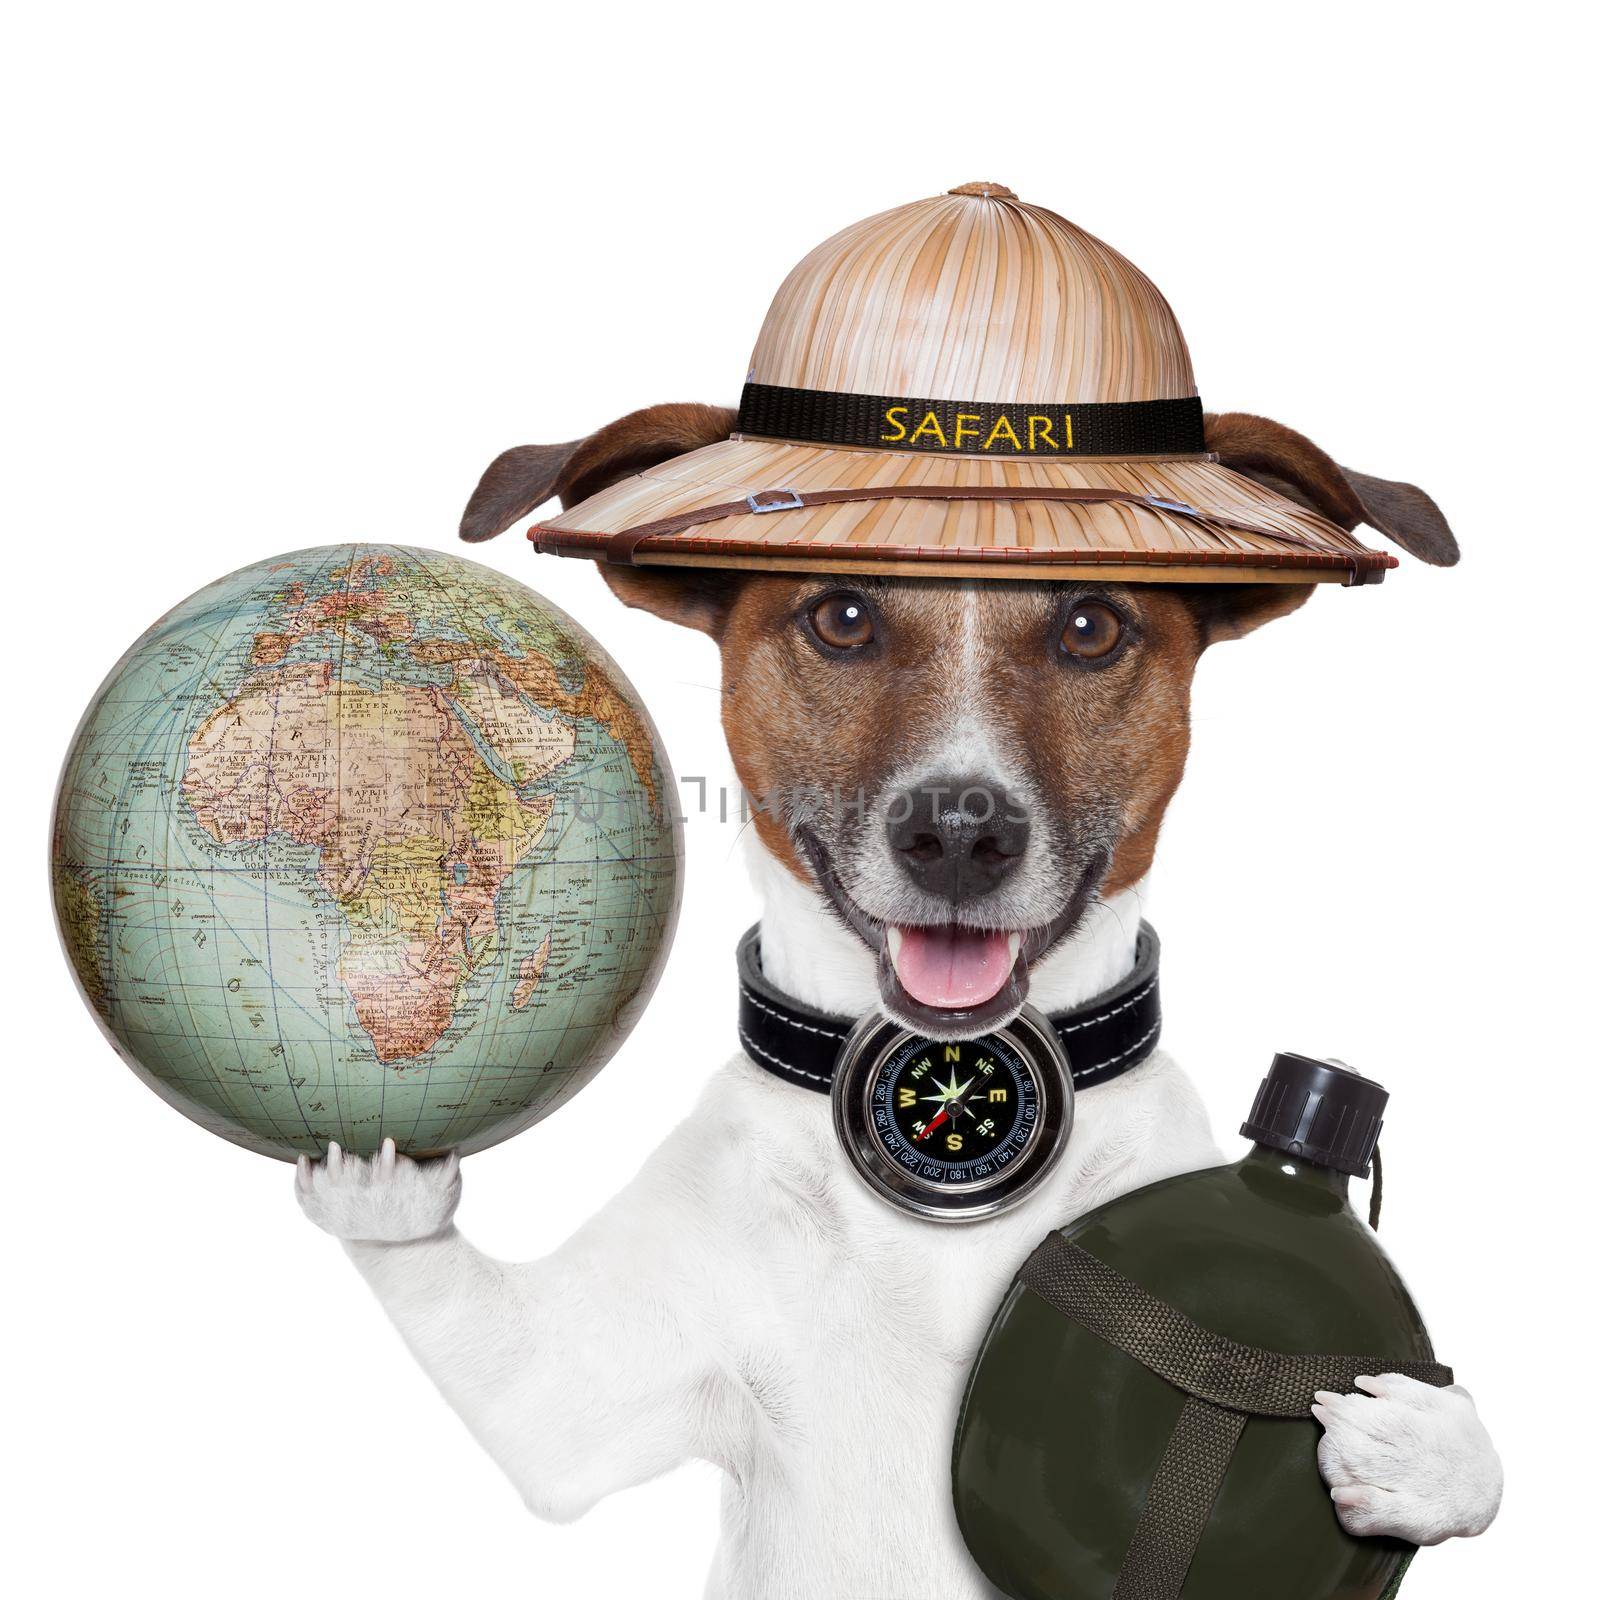 travel globe compass dog safari by Brosch